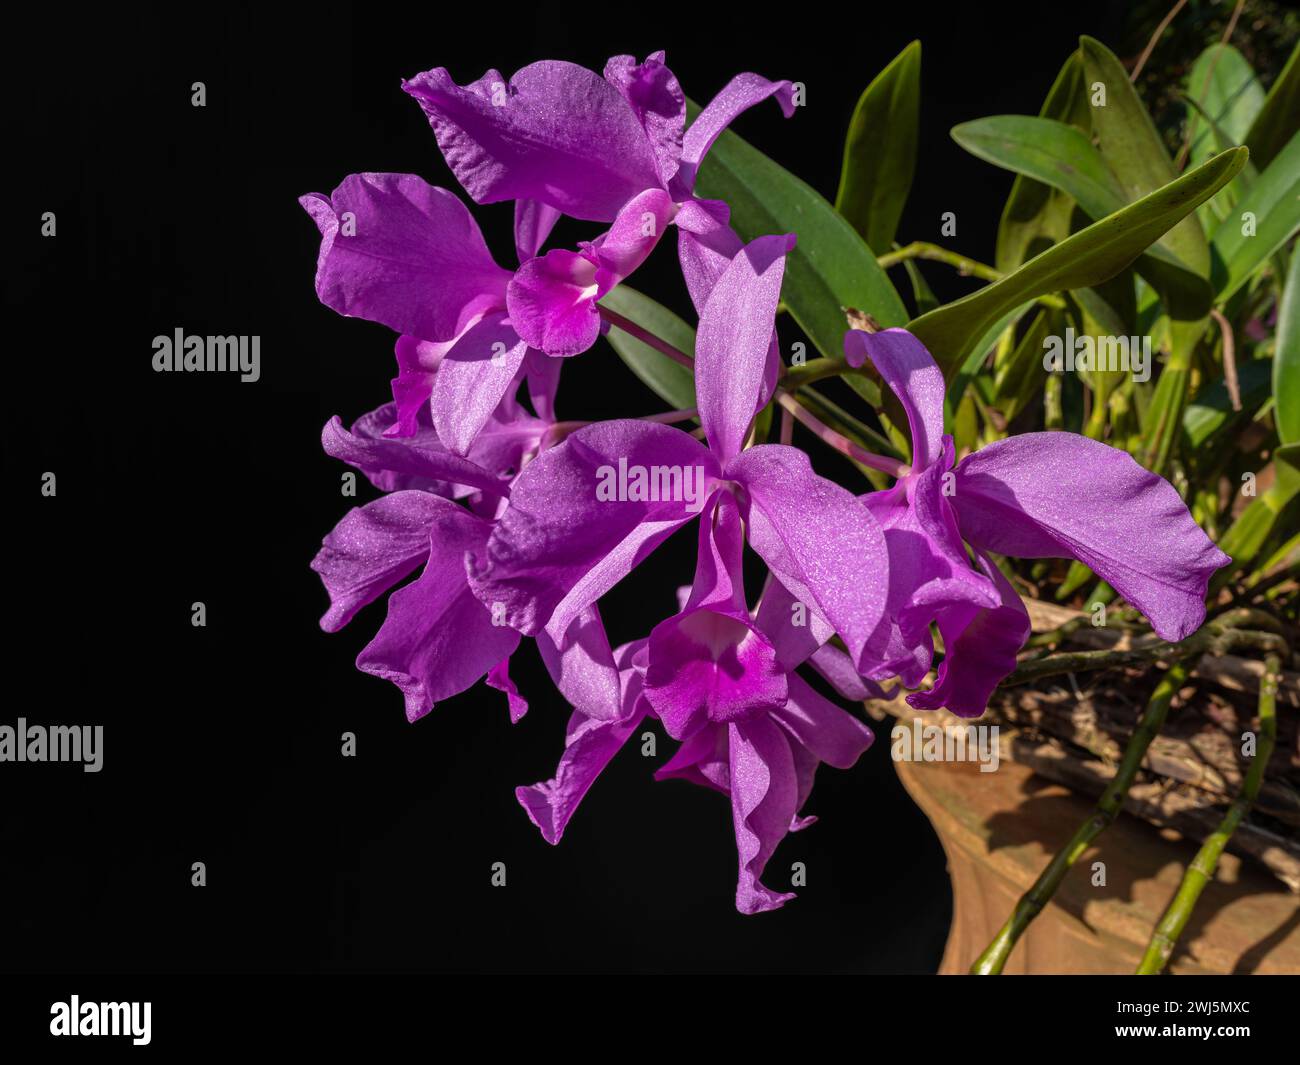 Gros plan de fleurs rose violet vif d'hybride orchidée cattleya floraison à l'extérieur sur fond noir Banque D'Images